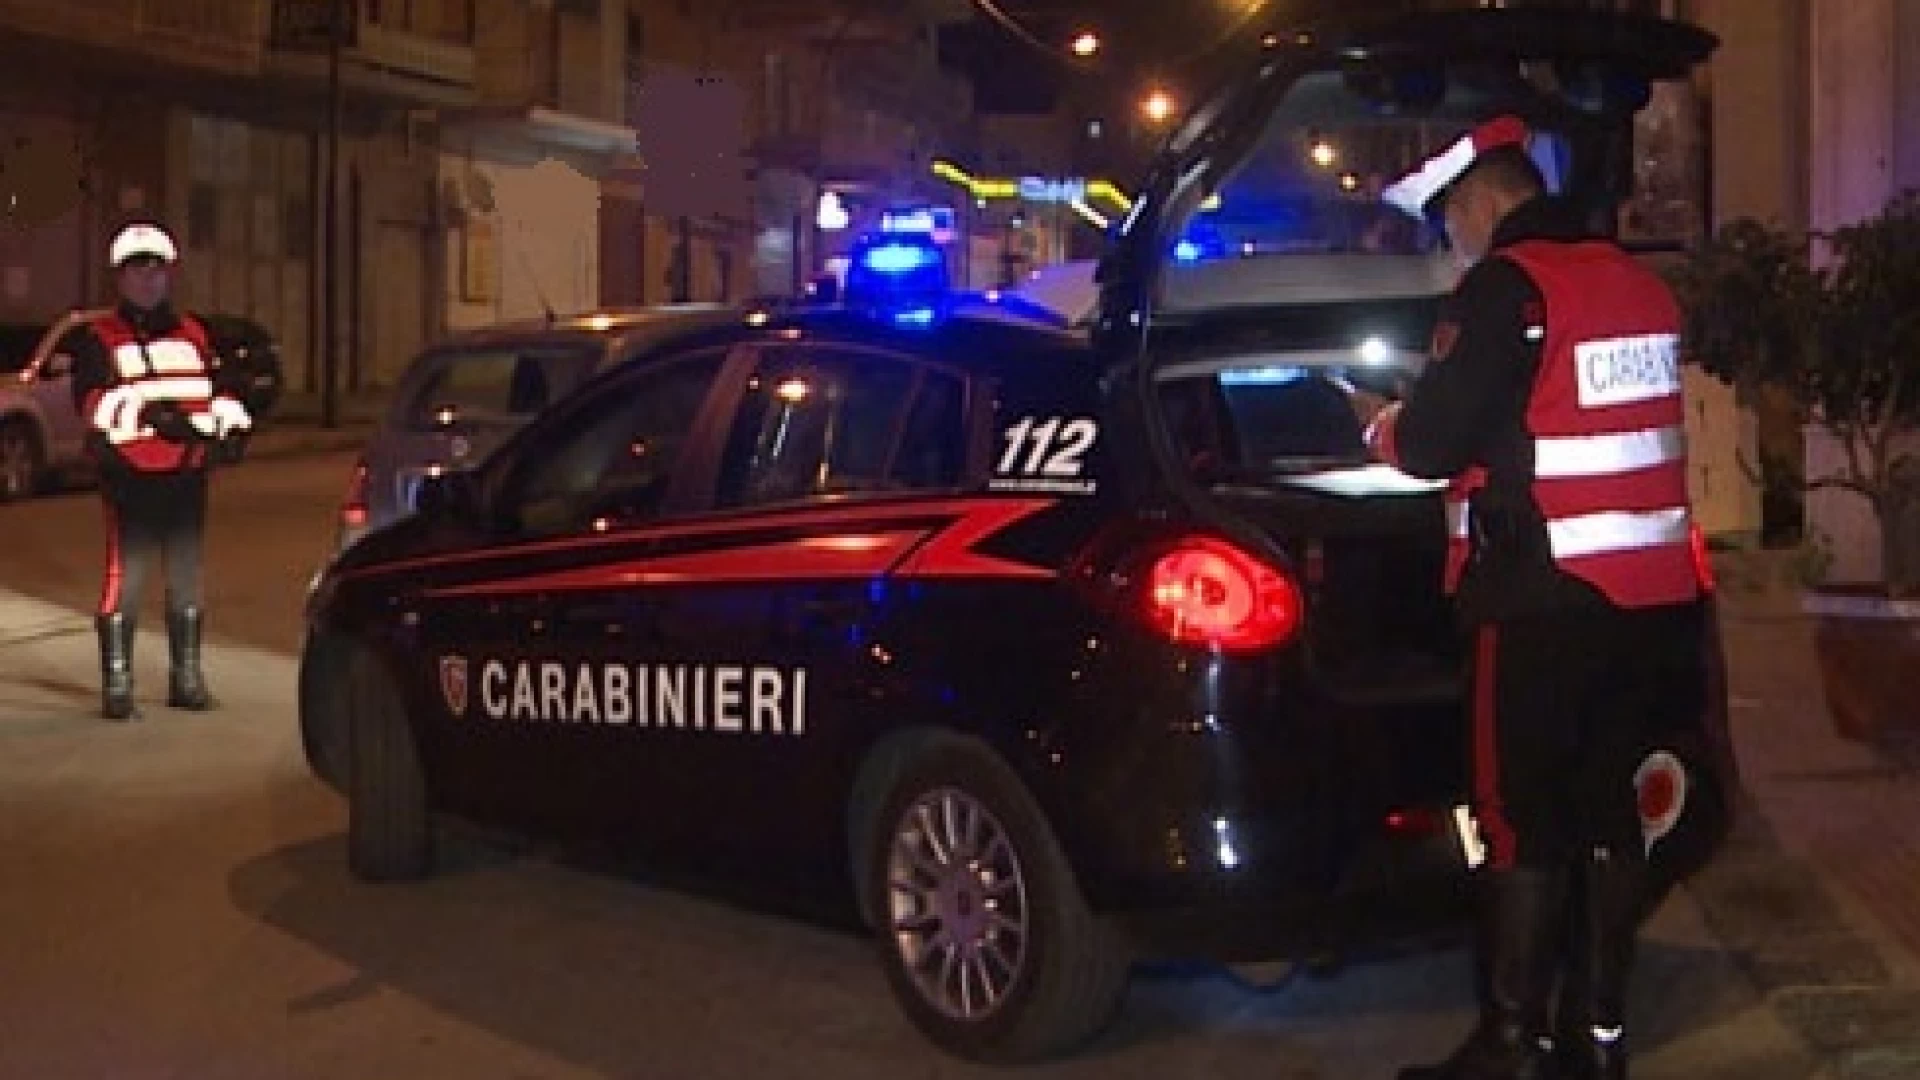 Perseguita la madre, I Carabinieri di Macchiagodena sottopongono cittadino a misura di sicurezza